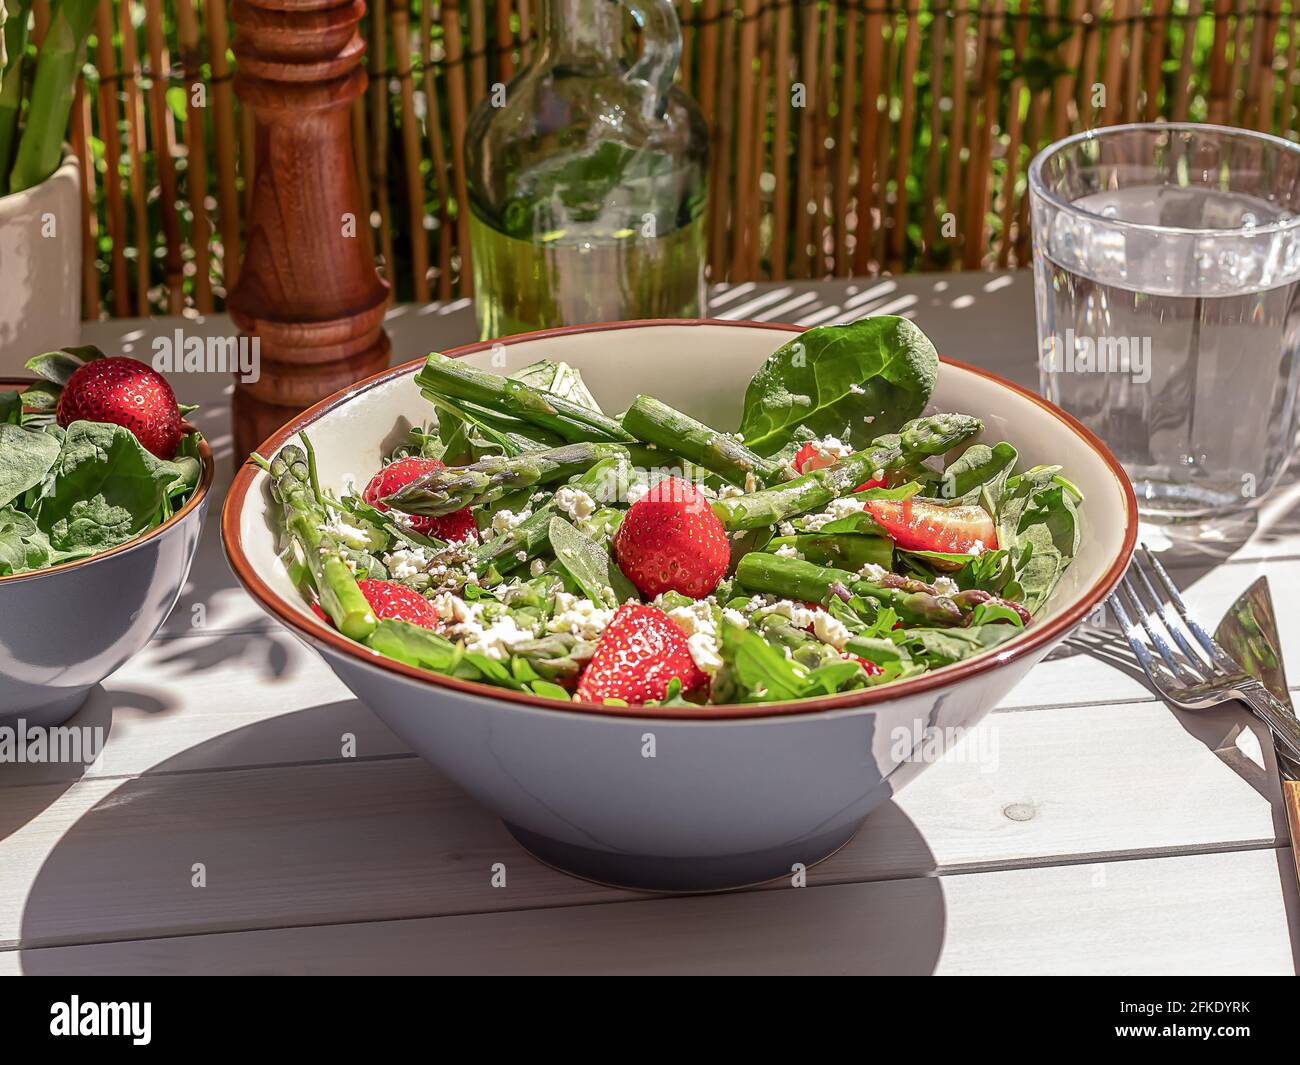 Frische Erdbeeren, grüner Spargel, Feta-Käse, Babyspinat und Rukula-Salat in einer Schüssel mit Mineralwasser serviert. Stockfoto